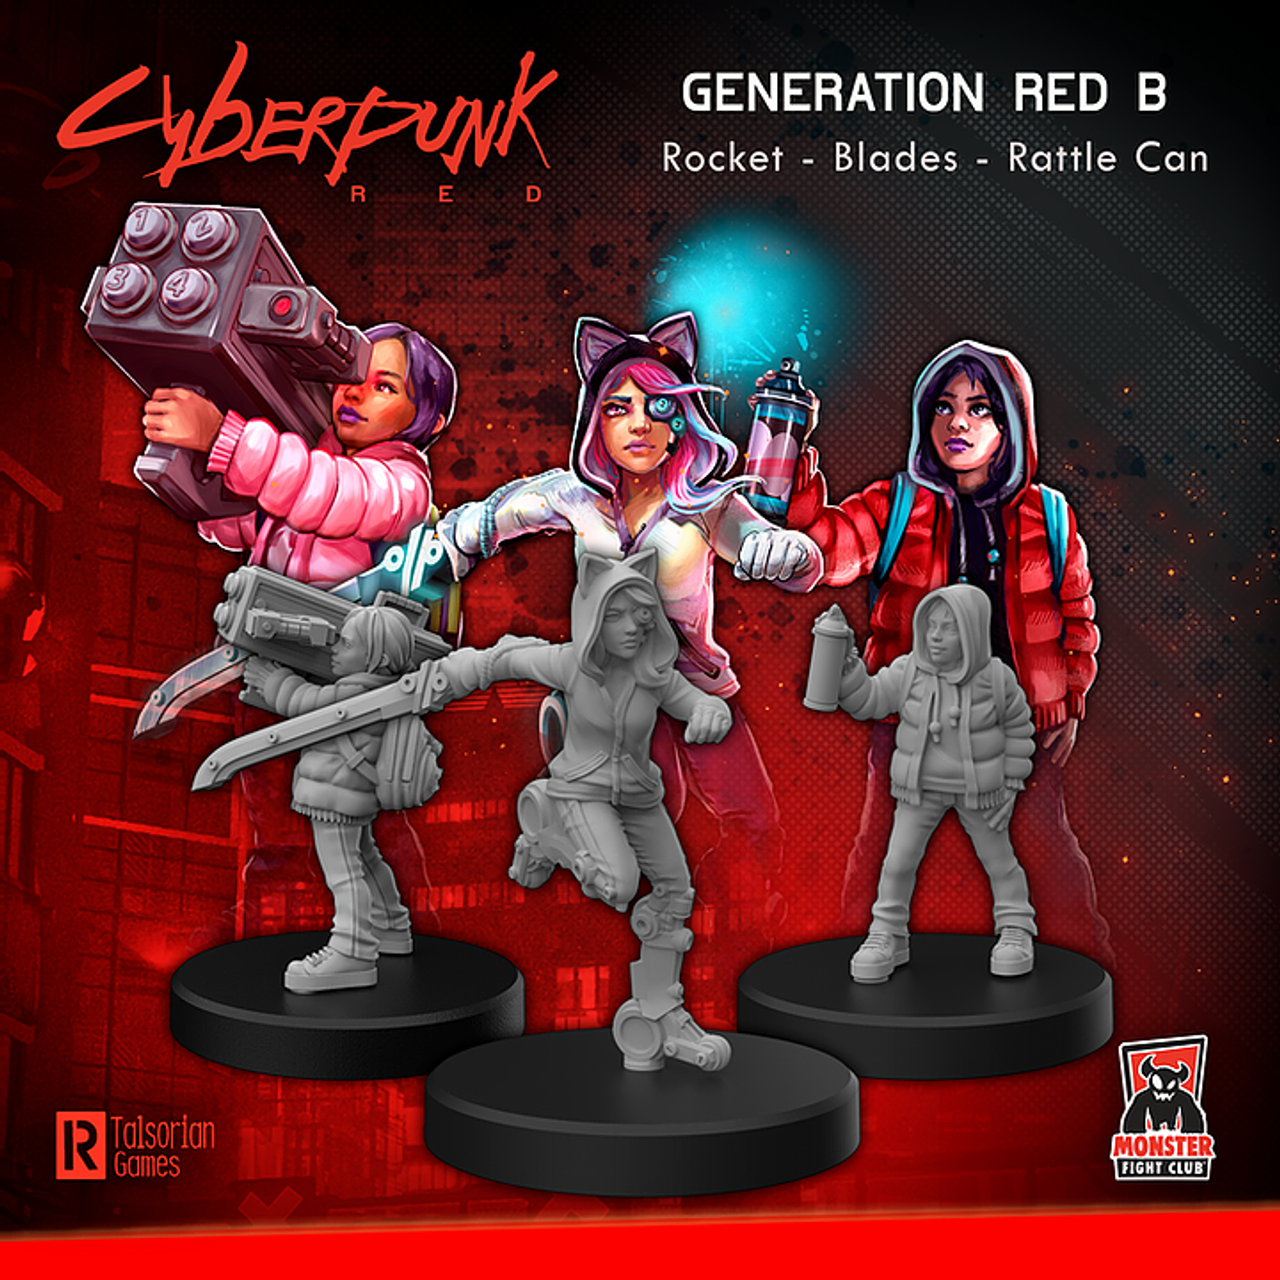 Cyberpunk red настольная игра купить на русском фото 101